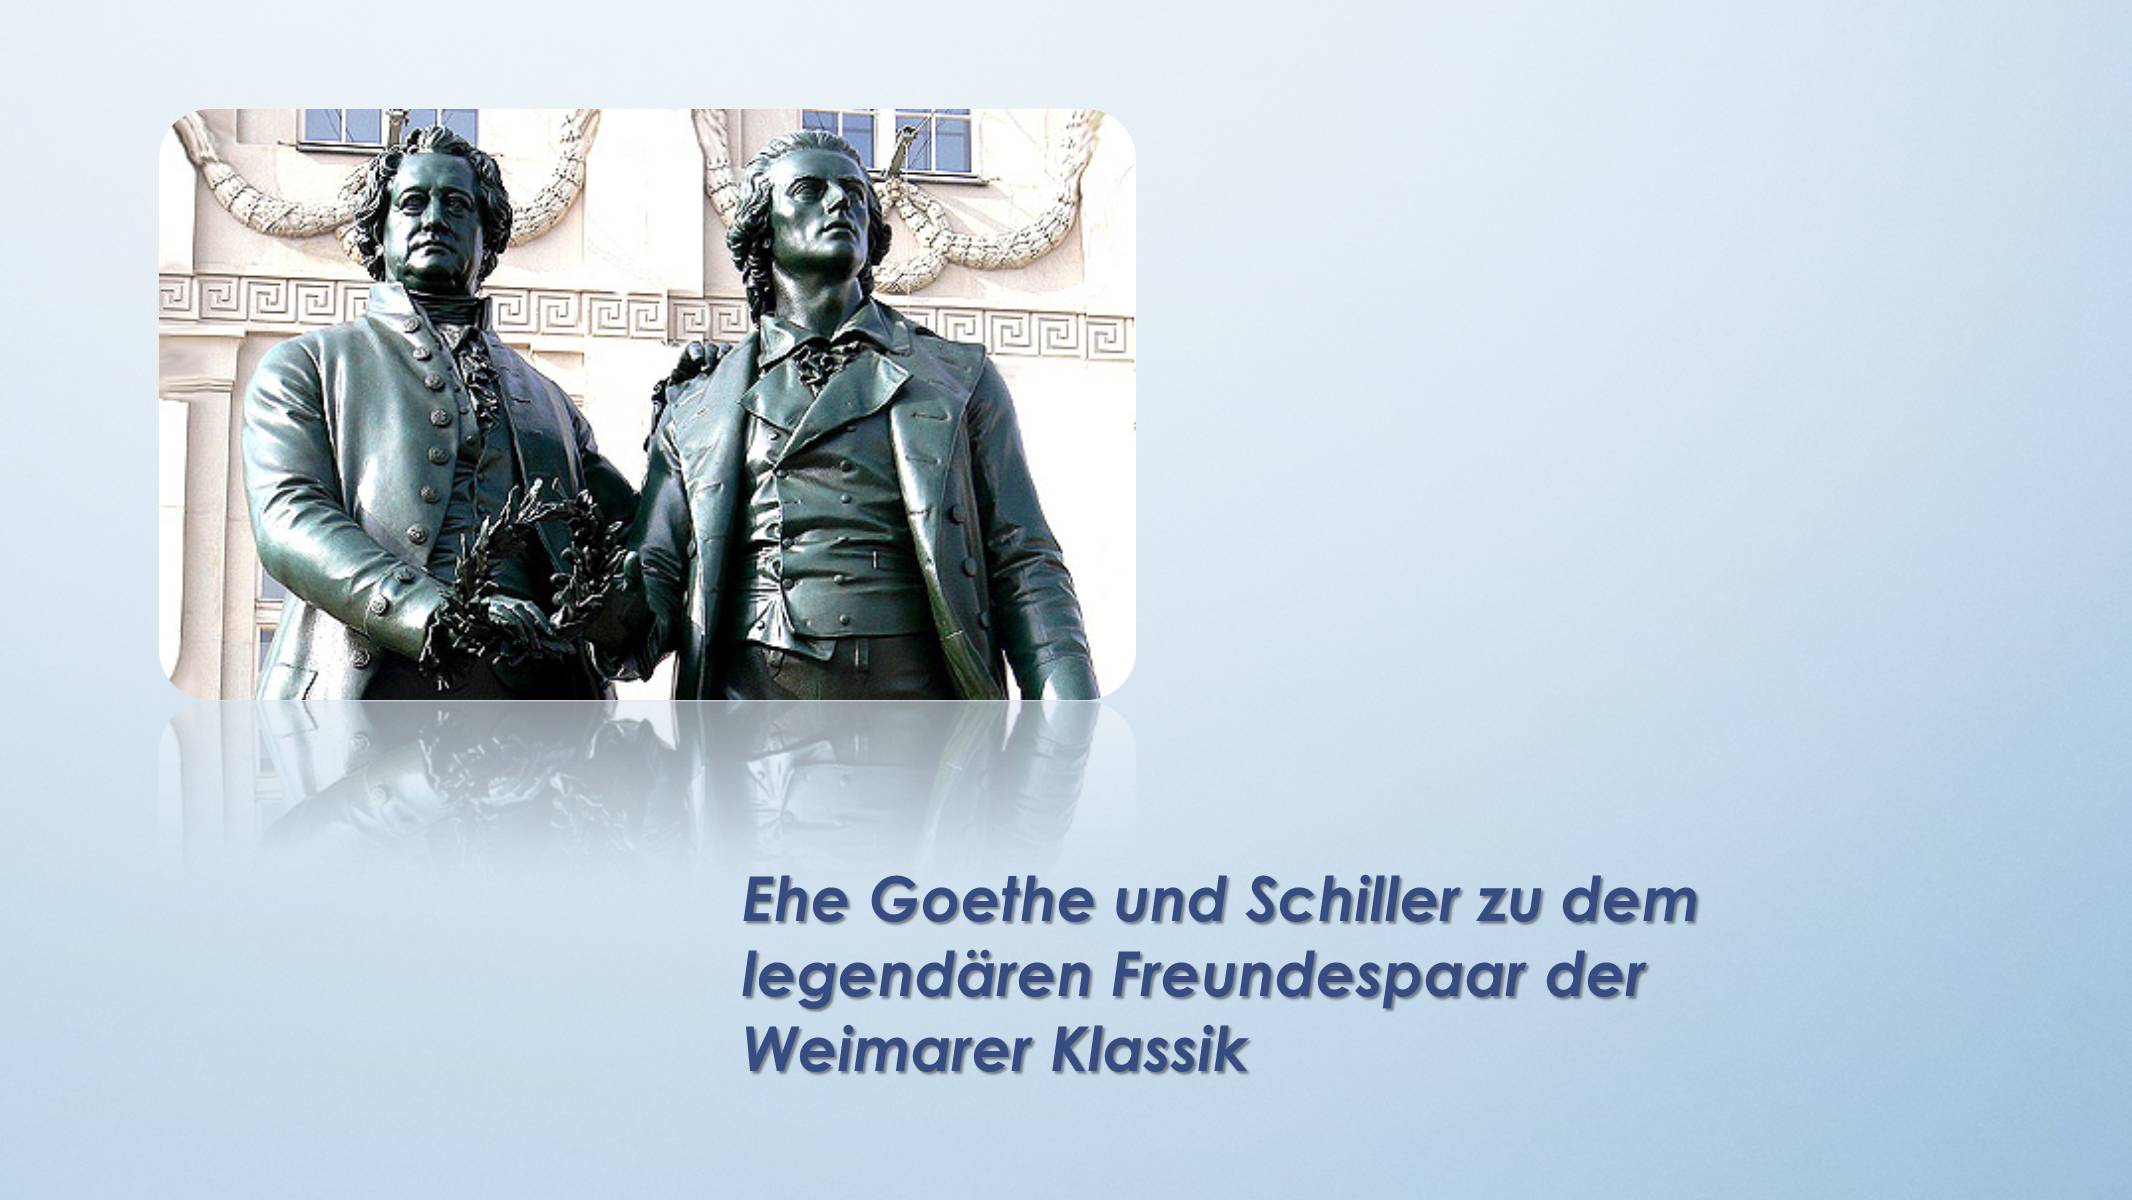 Ehe Goethe und Schiller zu dem legendären Freundespaar der Weimarer Klassik...